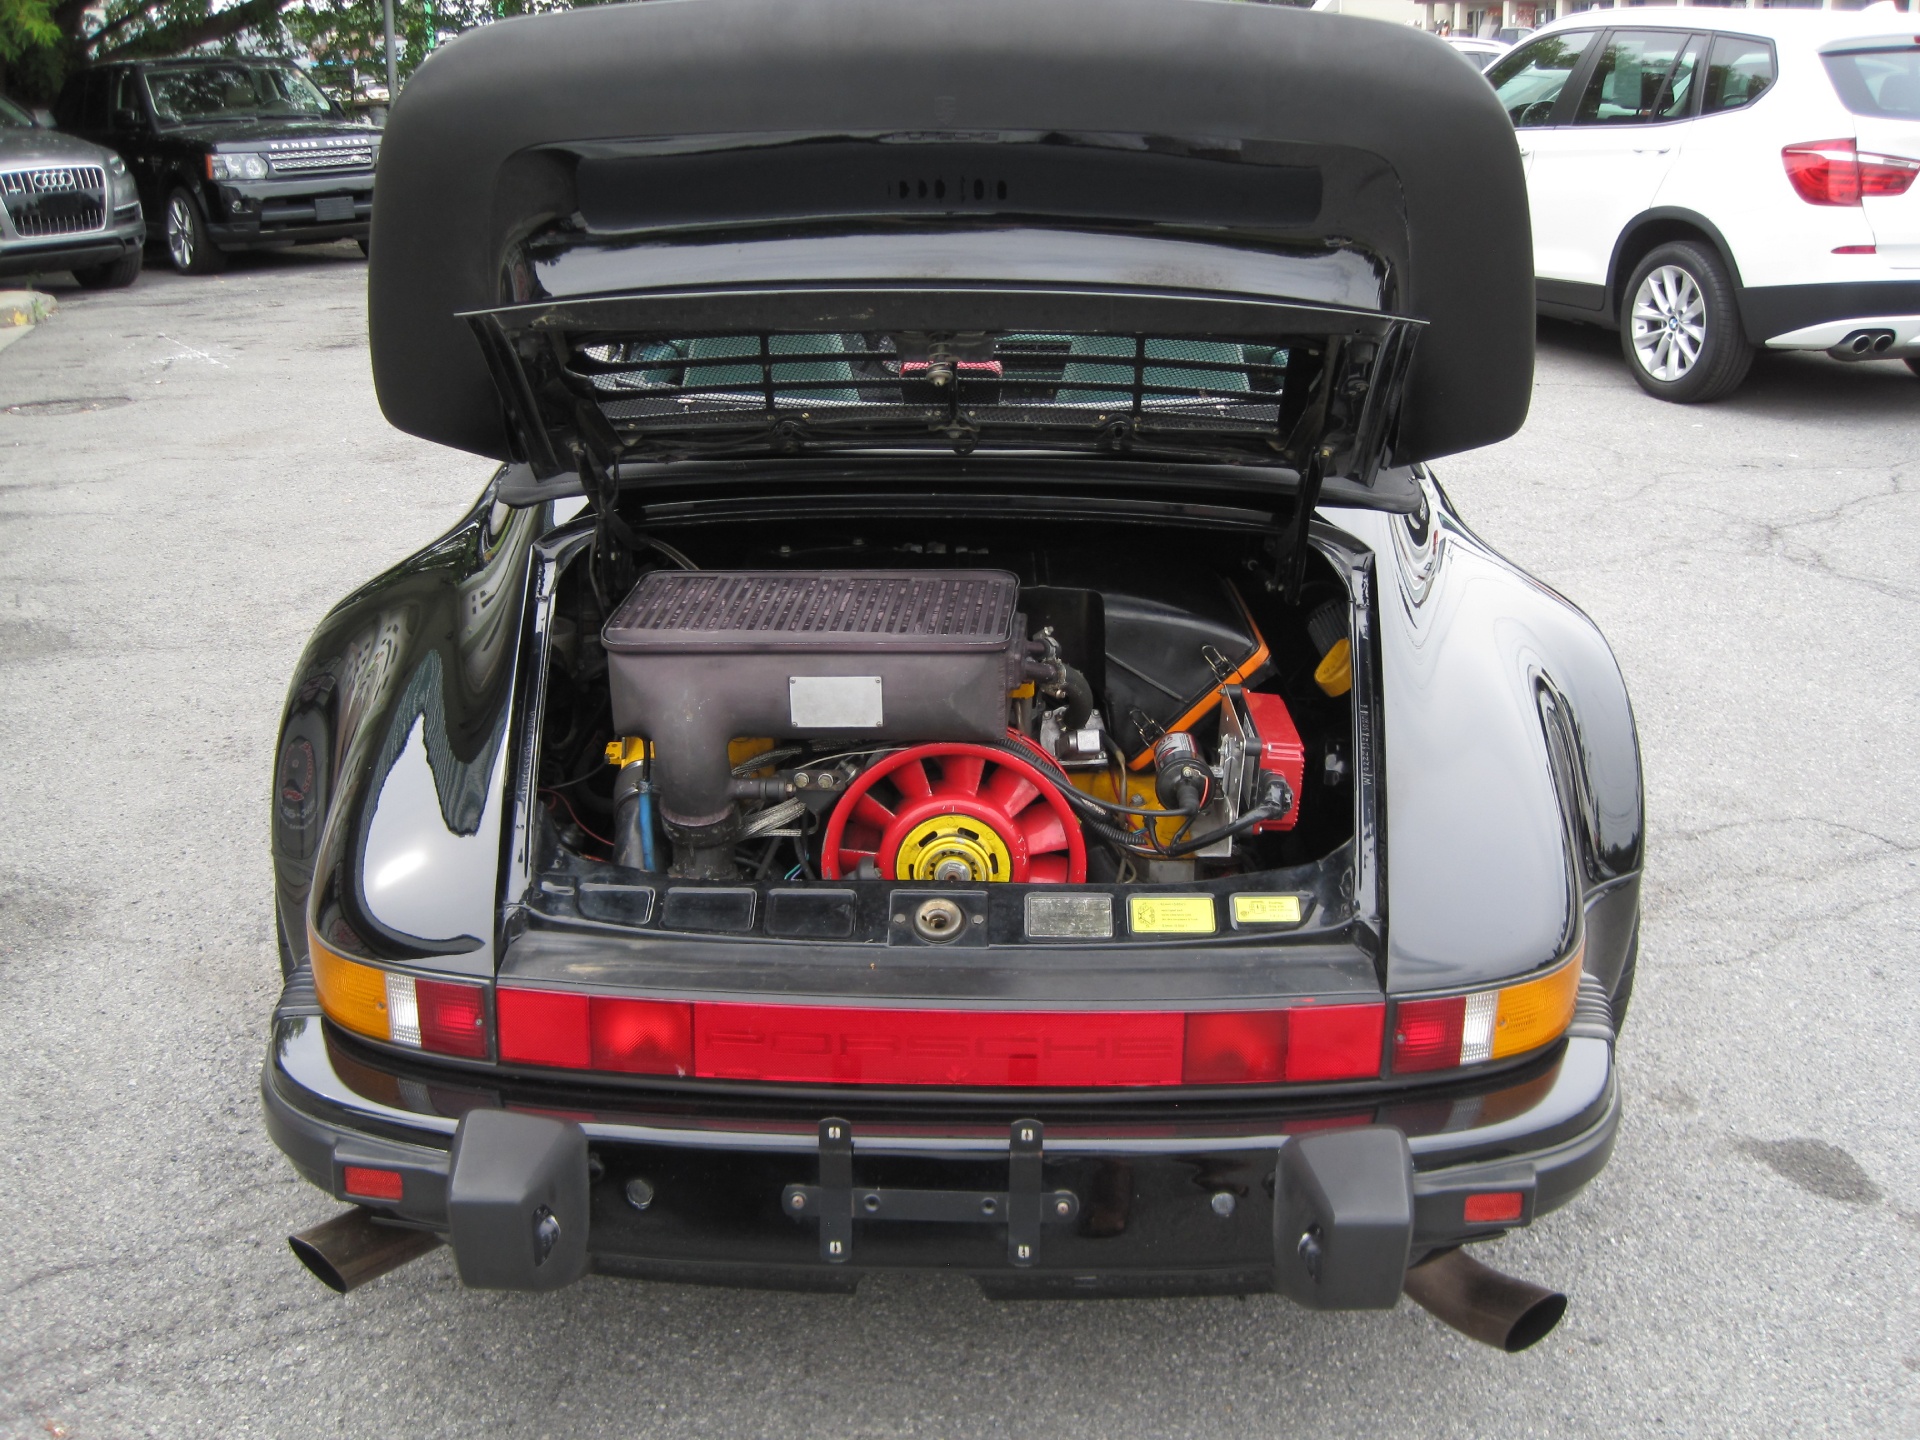 Used 1989 BLACK Porsche 911 TURBO 930 CABRIOLET TURBO | Albany, NY